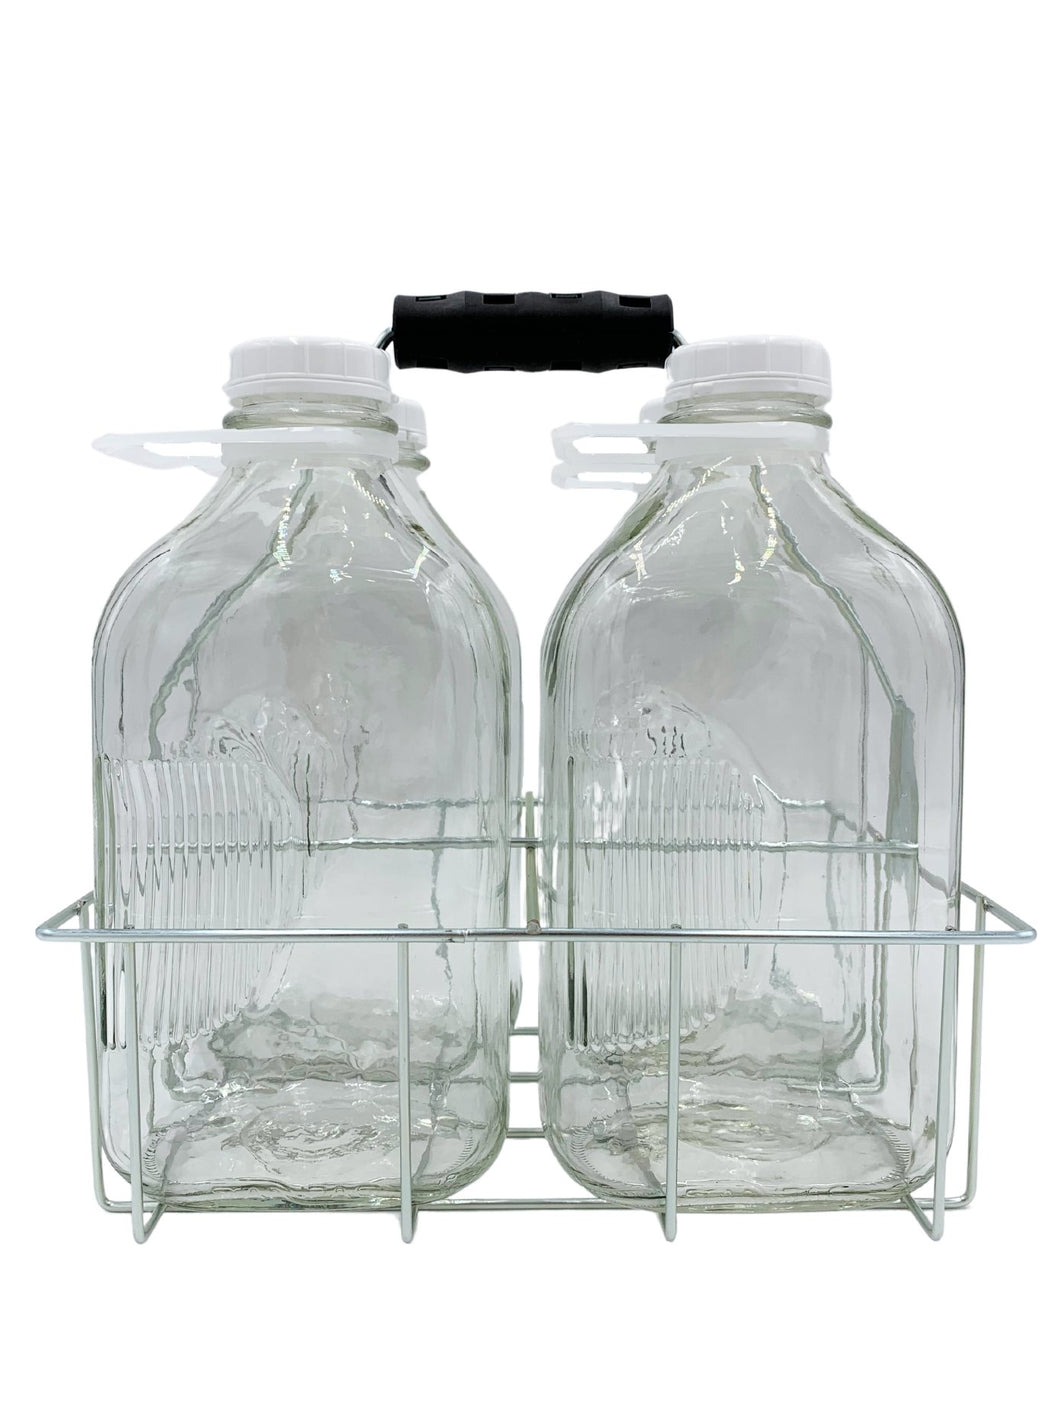 4 Cell Wire Milk Bottle Carrier for 64 Oz Bottles - Better Beverage Bottles